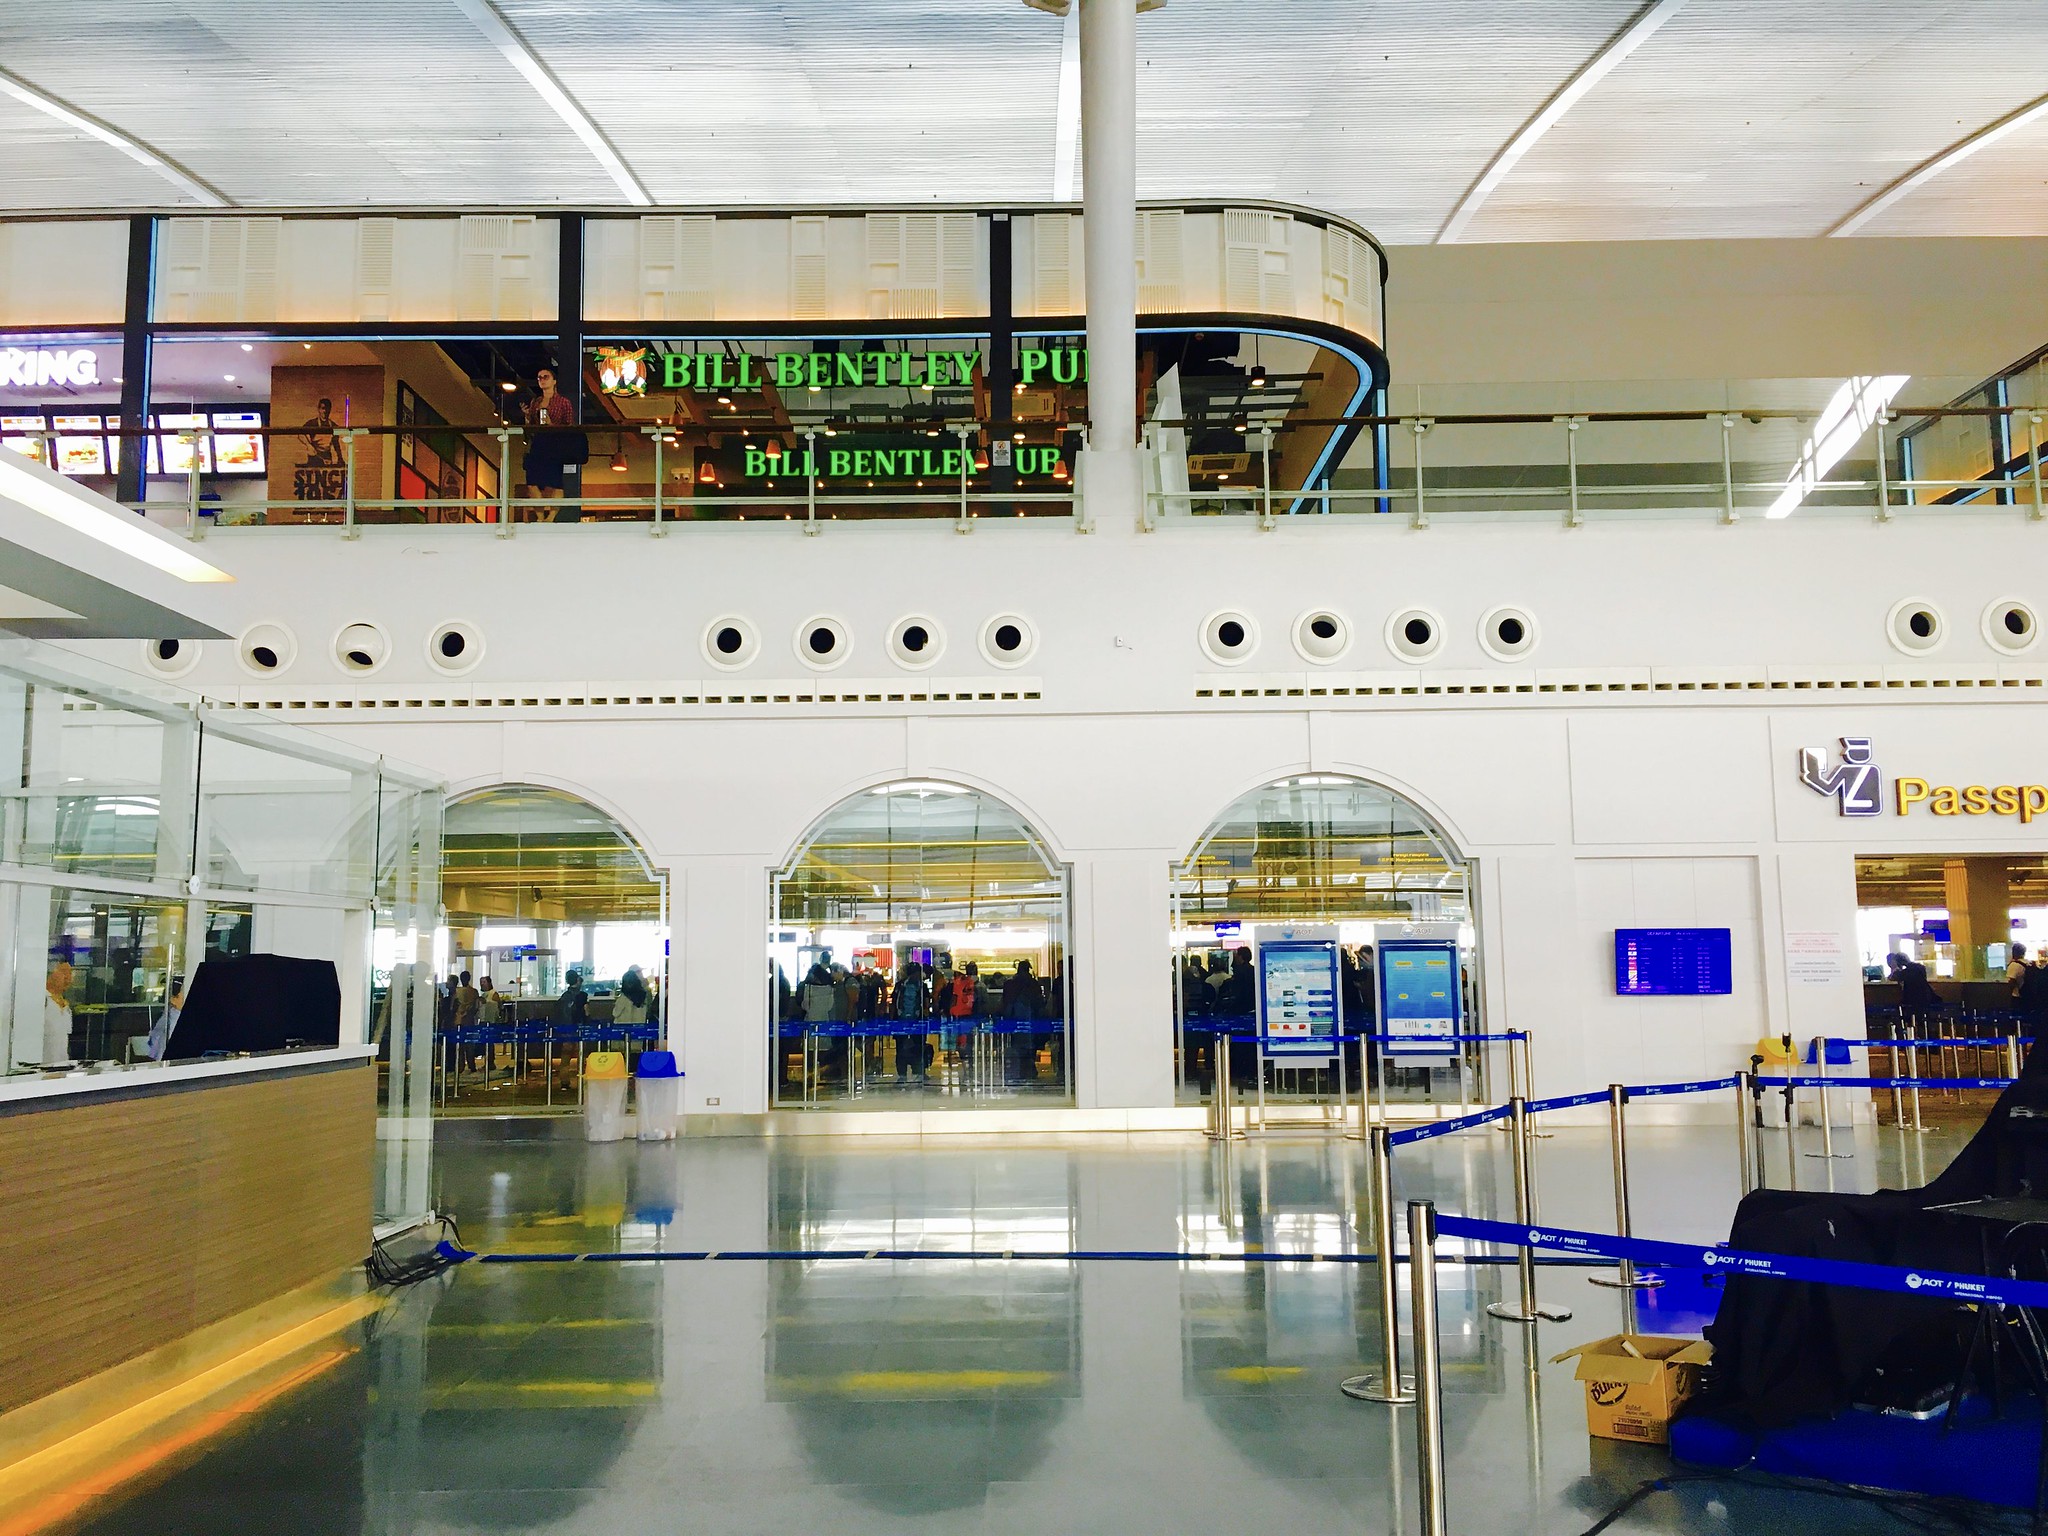 New Phuket International Airport - Opened September 2016